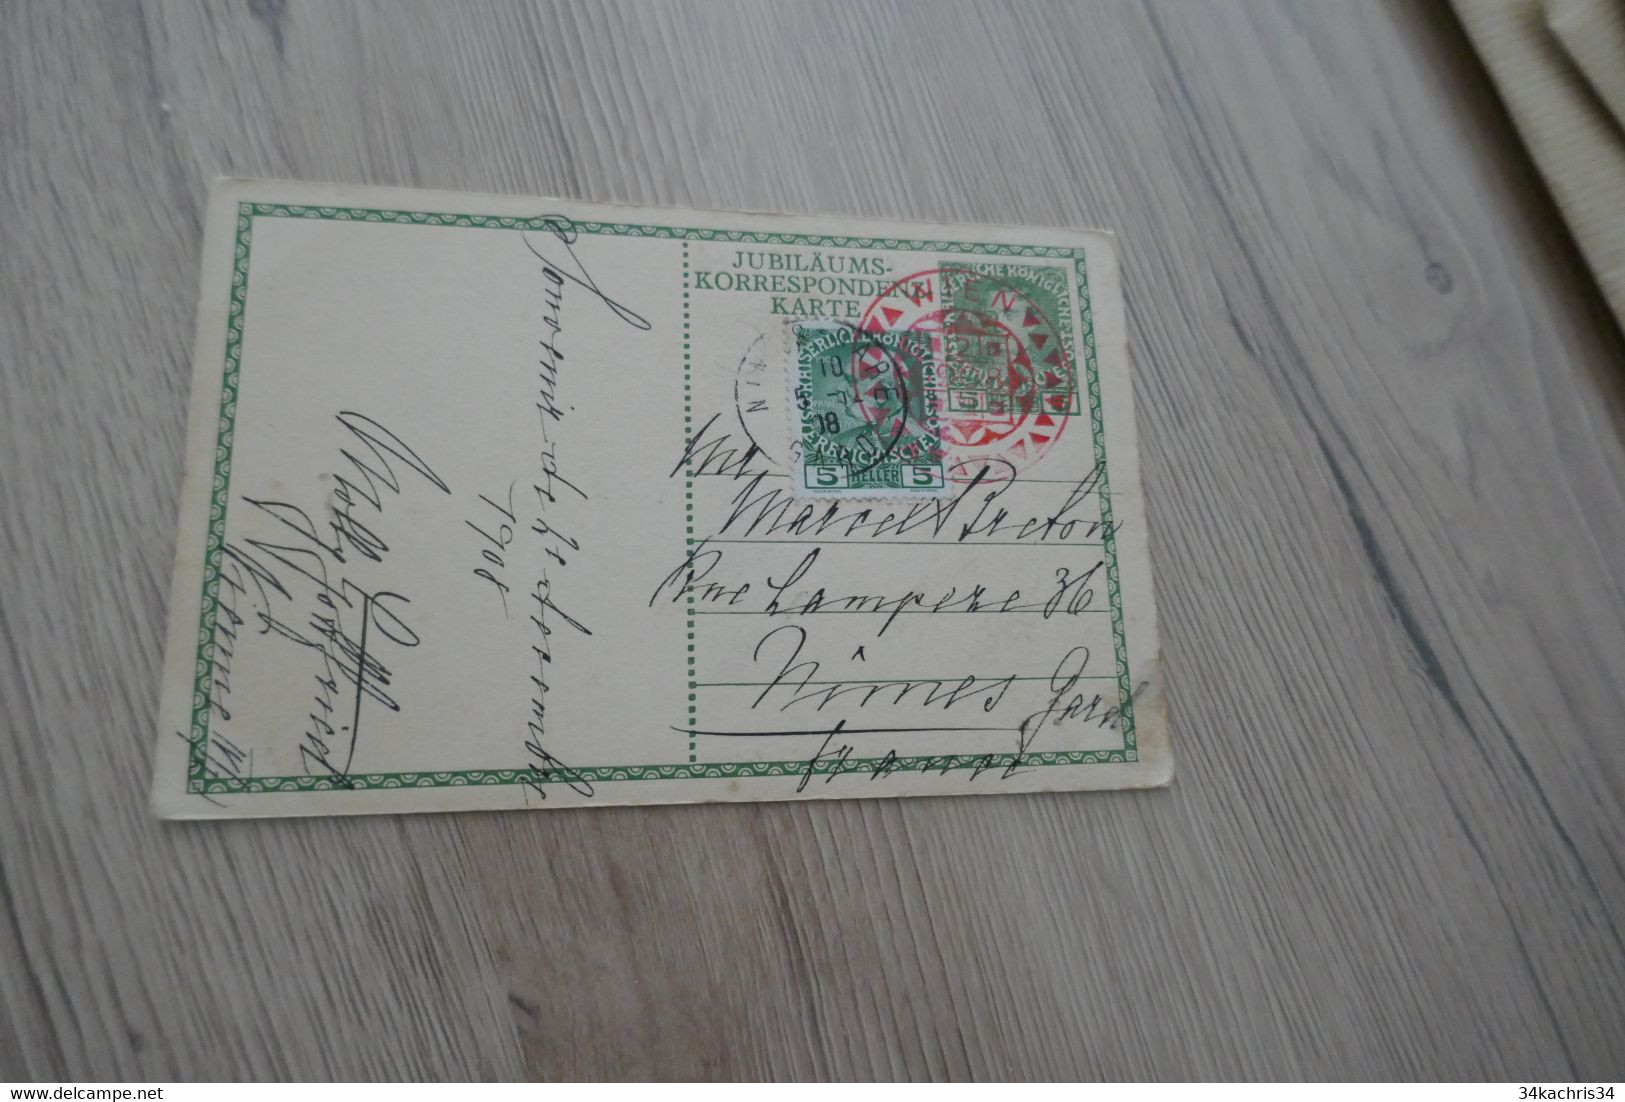 Autriche Ostereich Jubiläums Korrespondenzkarte 1908 - Covers & Documents